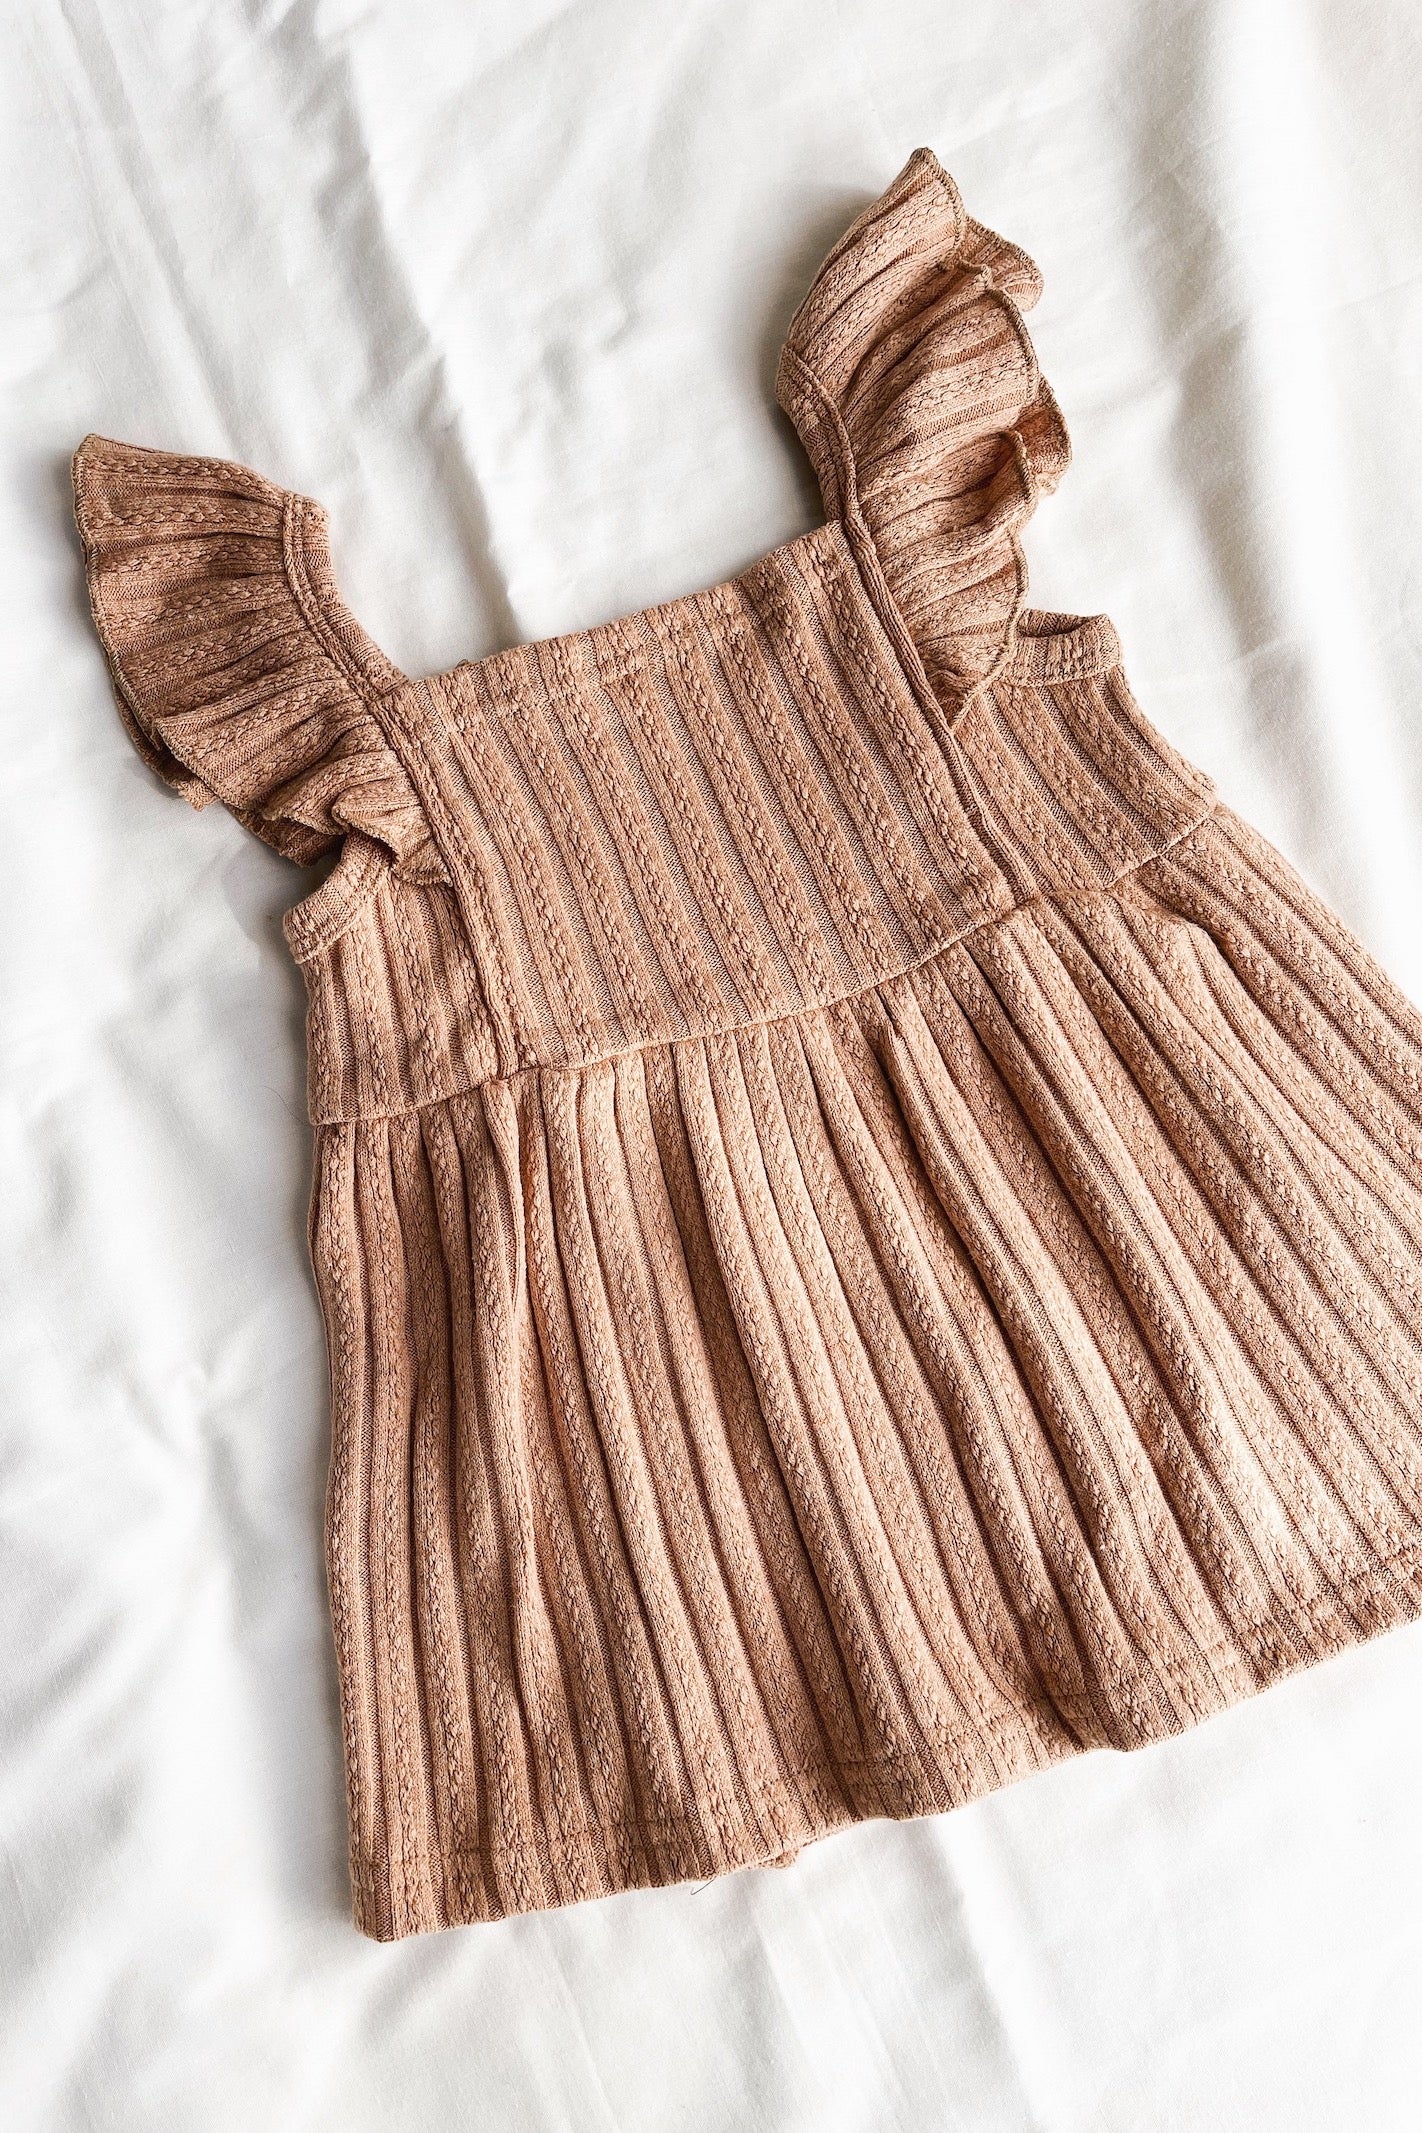 brown knit dress